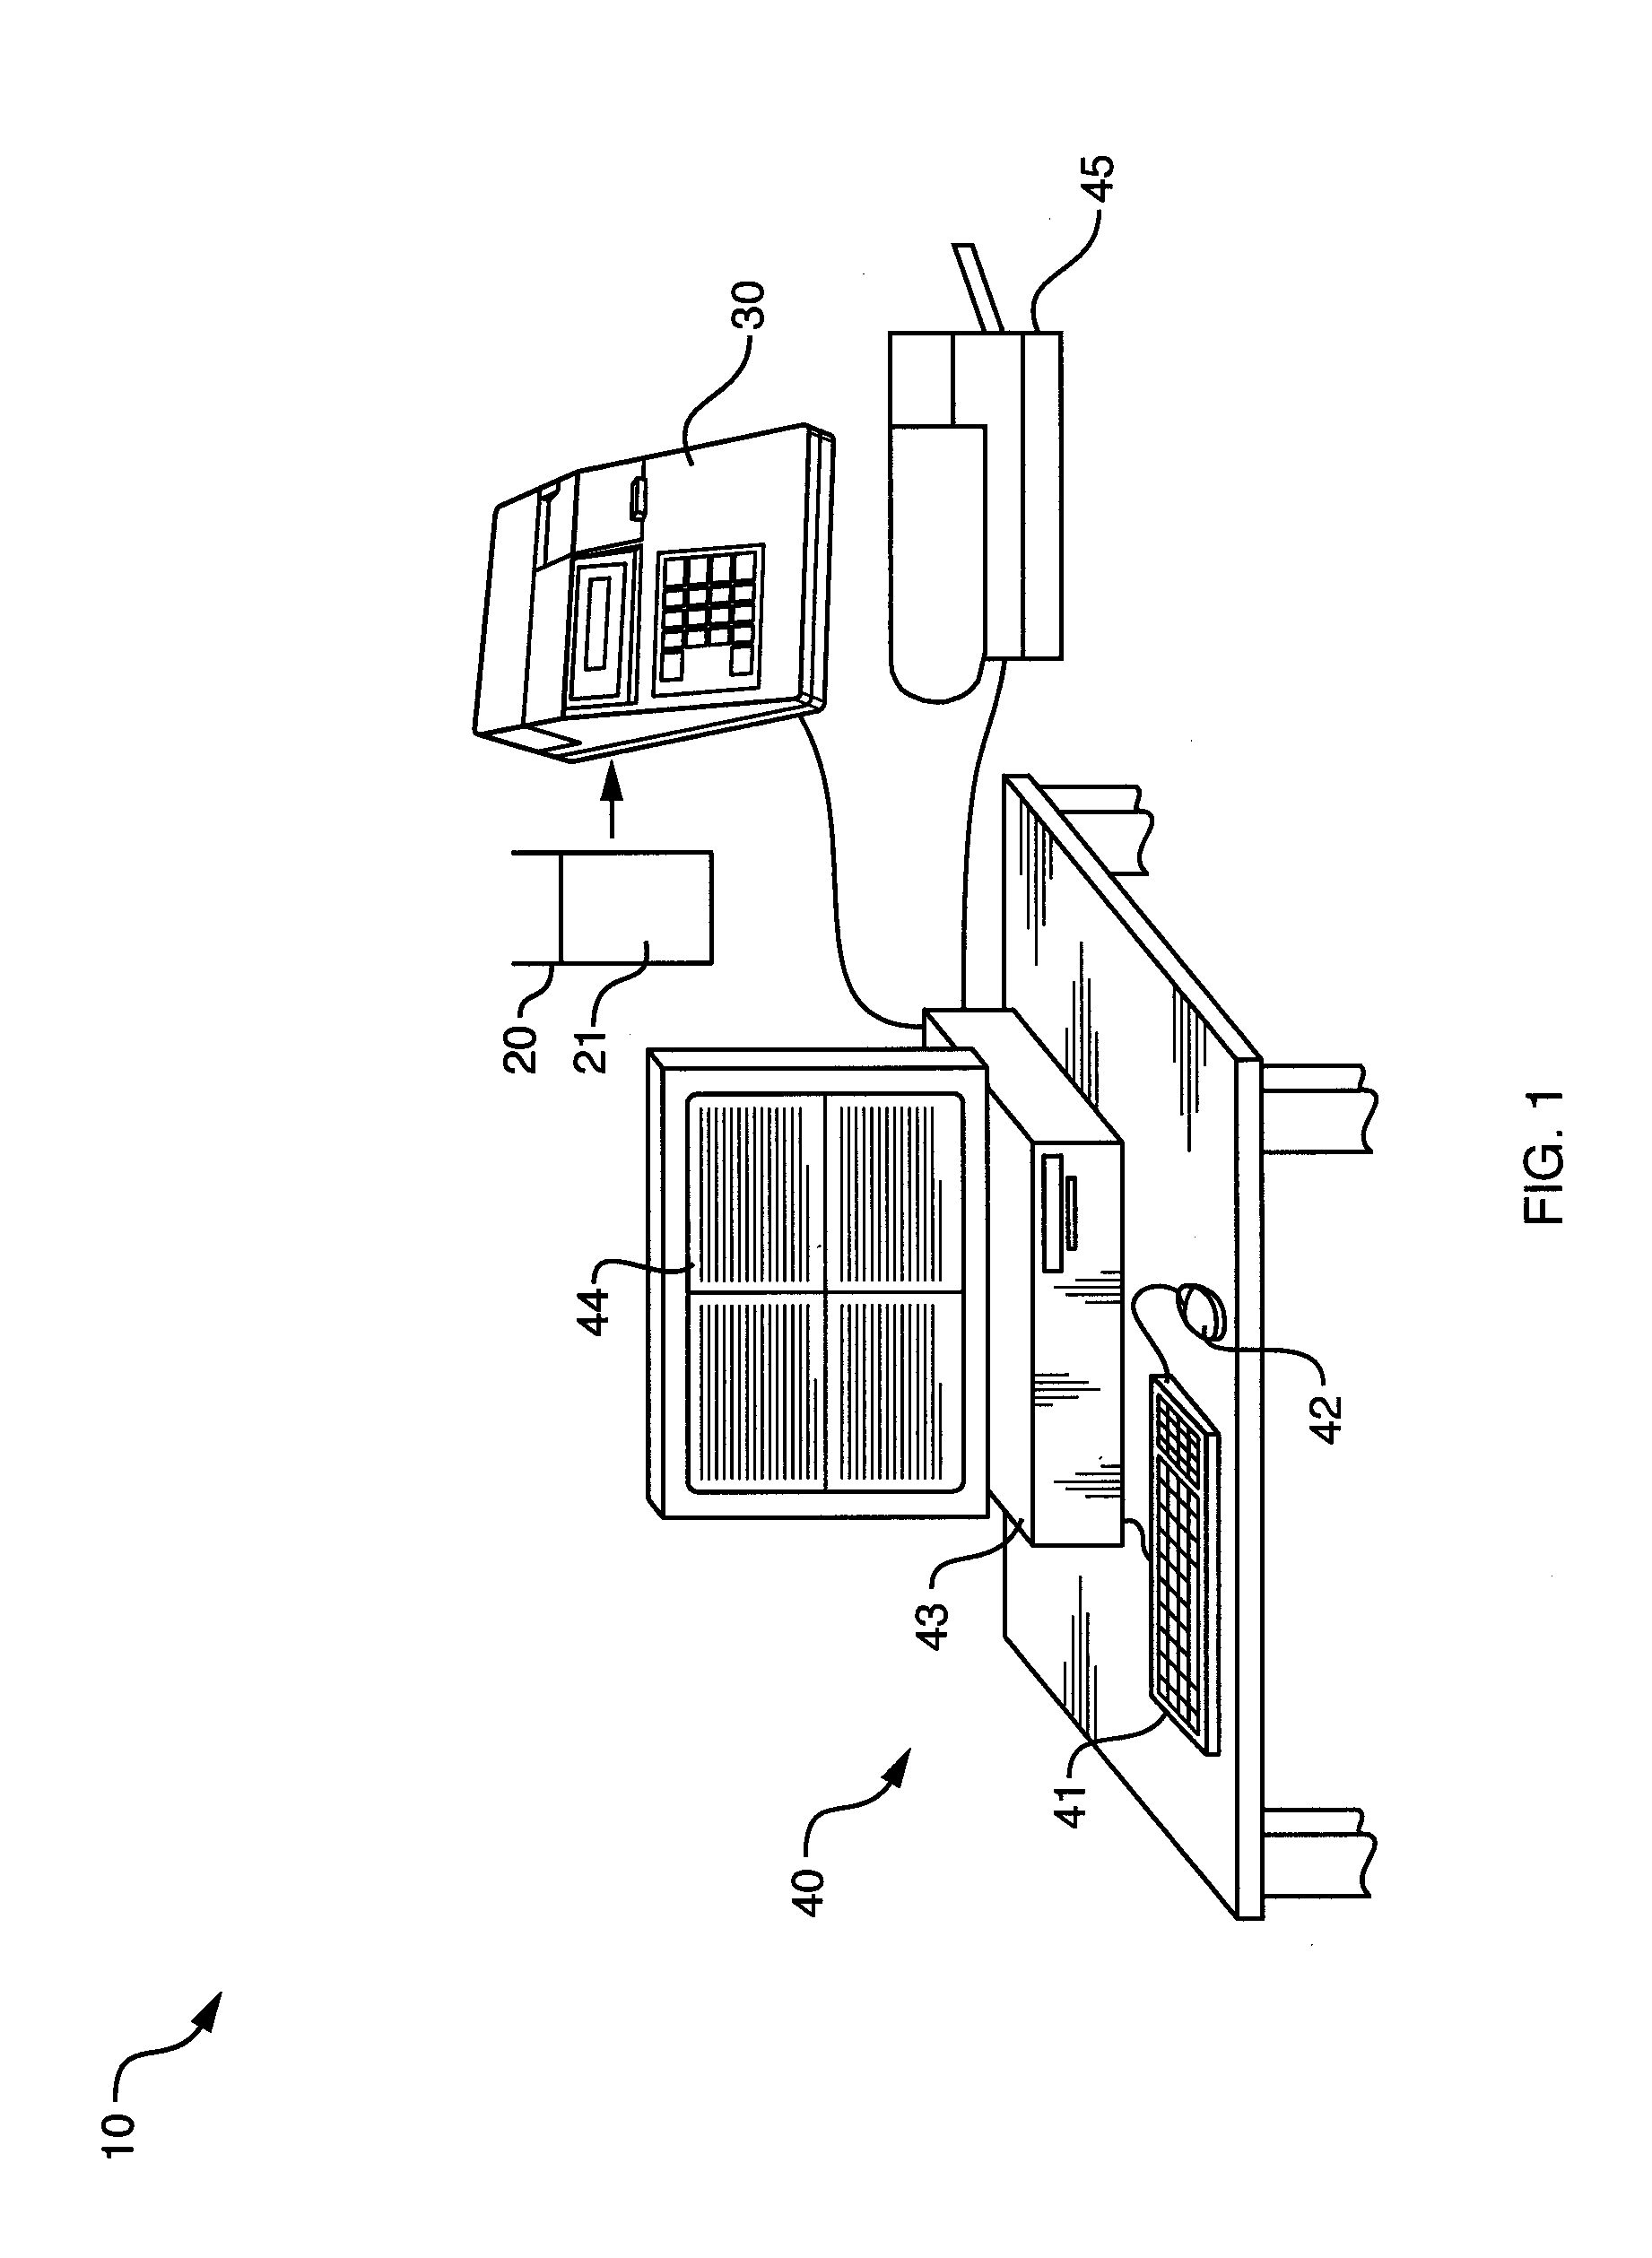 Method and apparatus for determining liquid volume